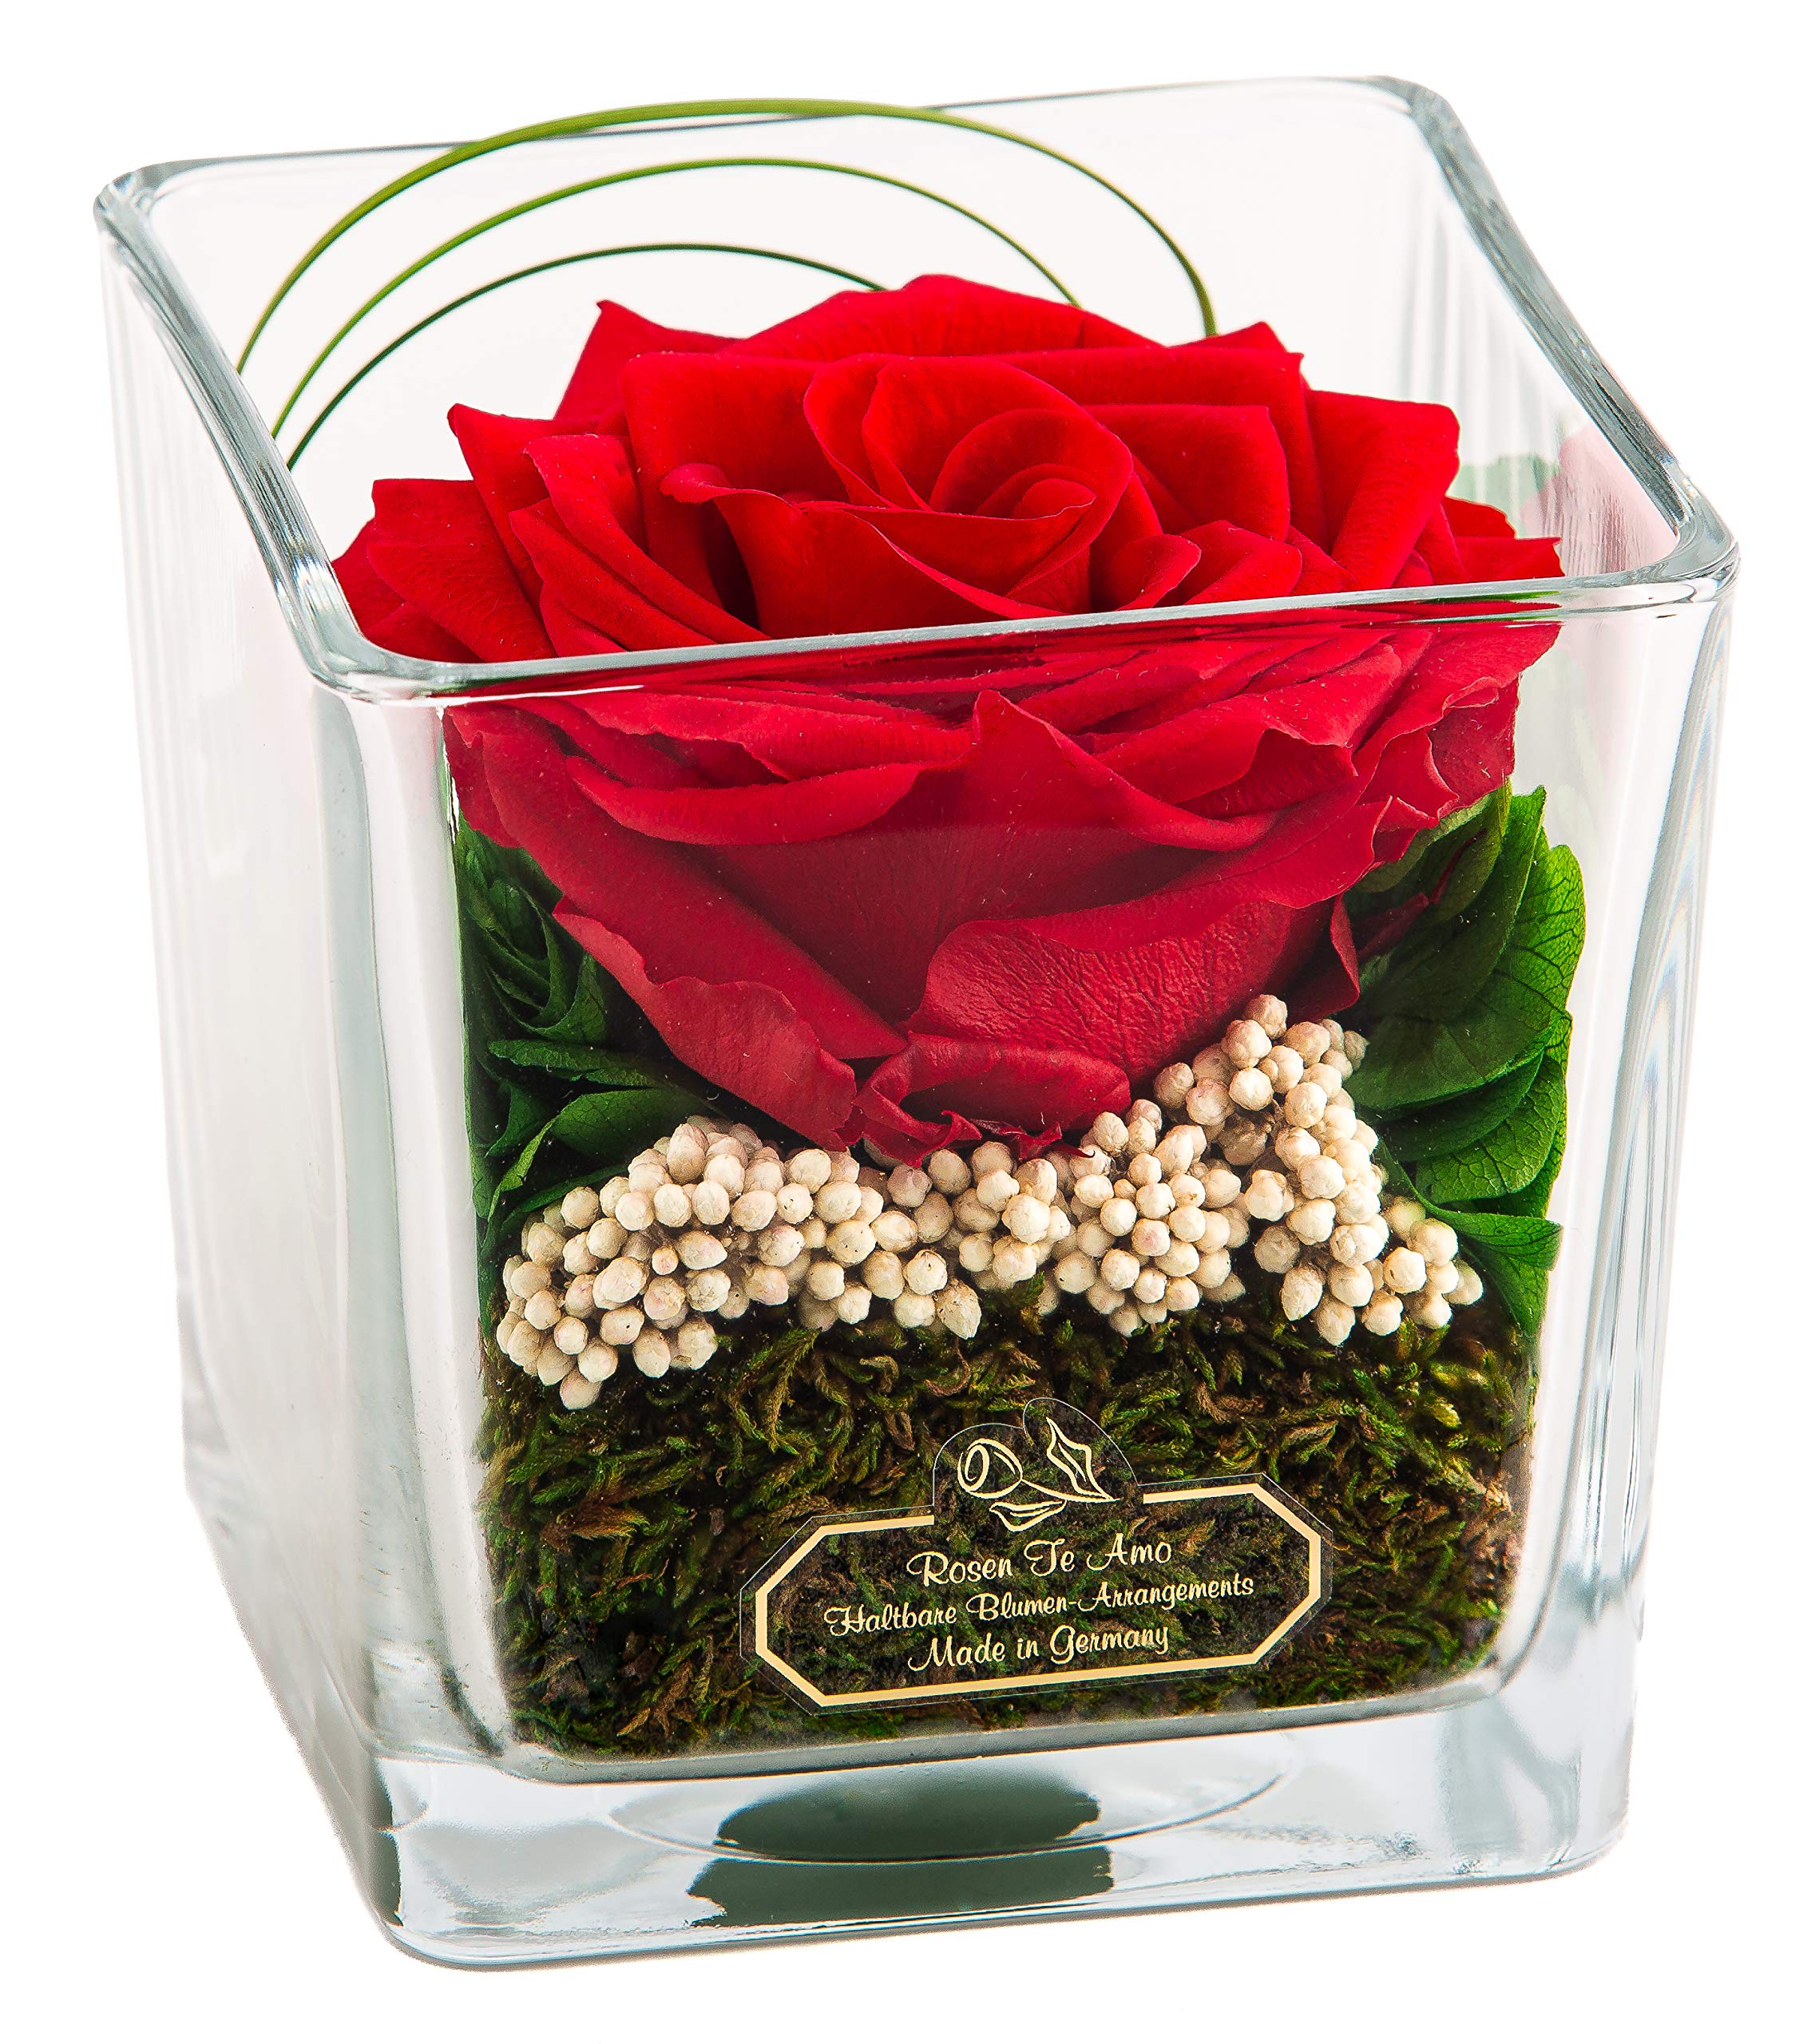 Rosen-Te-Amo | Muttertag Infinity Rosen | Premium konservierte ewige Rose im Glas-Vase| duftend | handgefertigt mit echten Deko-Foliage | feines Design | Geburtstagsgeschenk Frauen Mama Freundin Oma